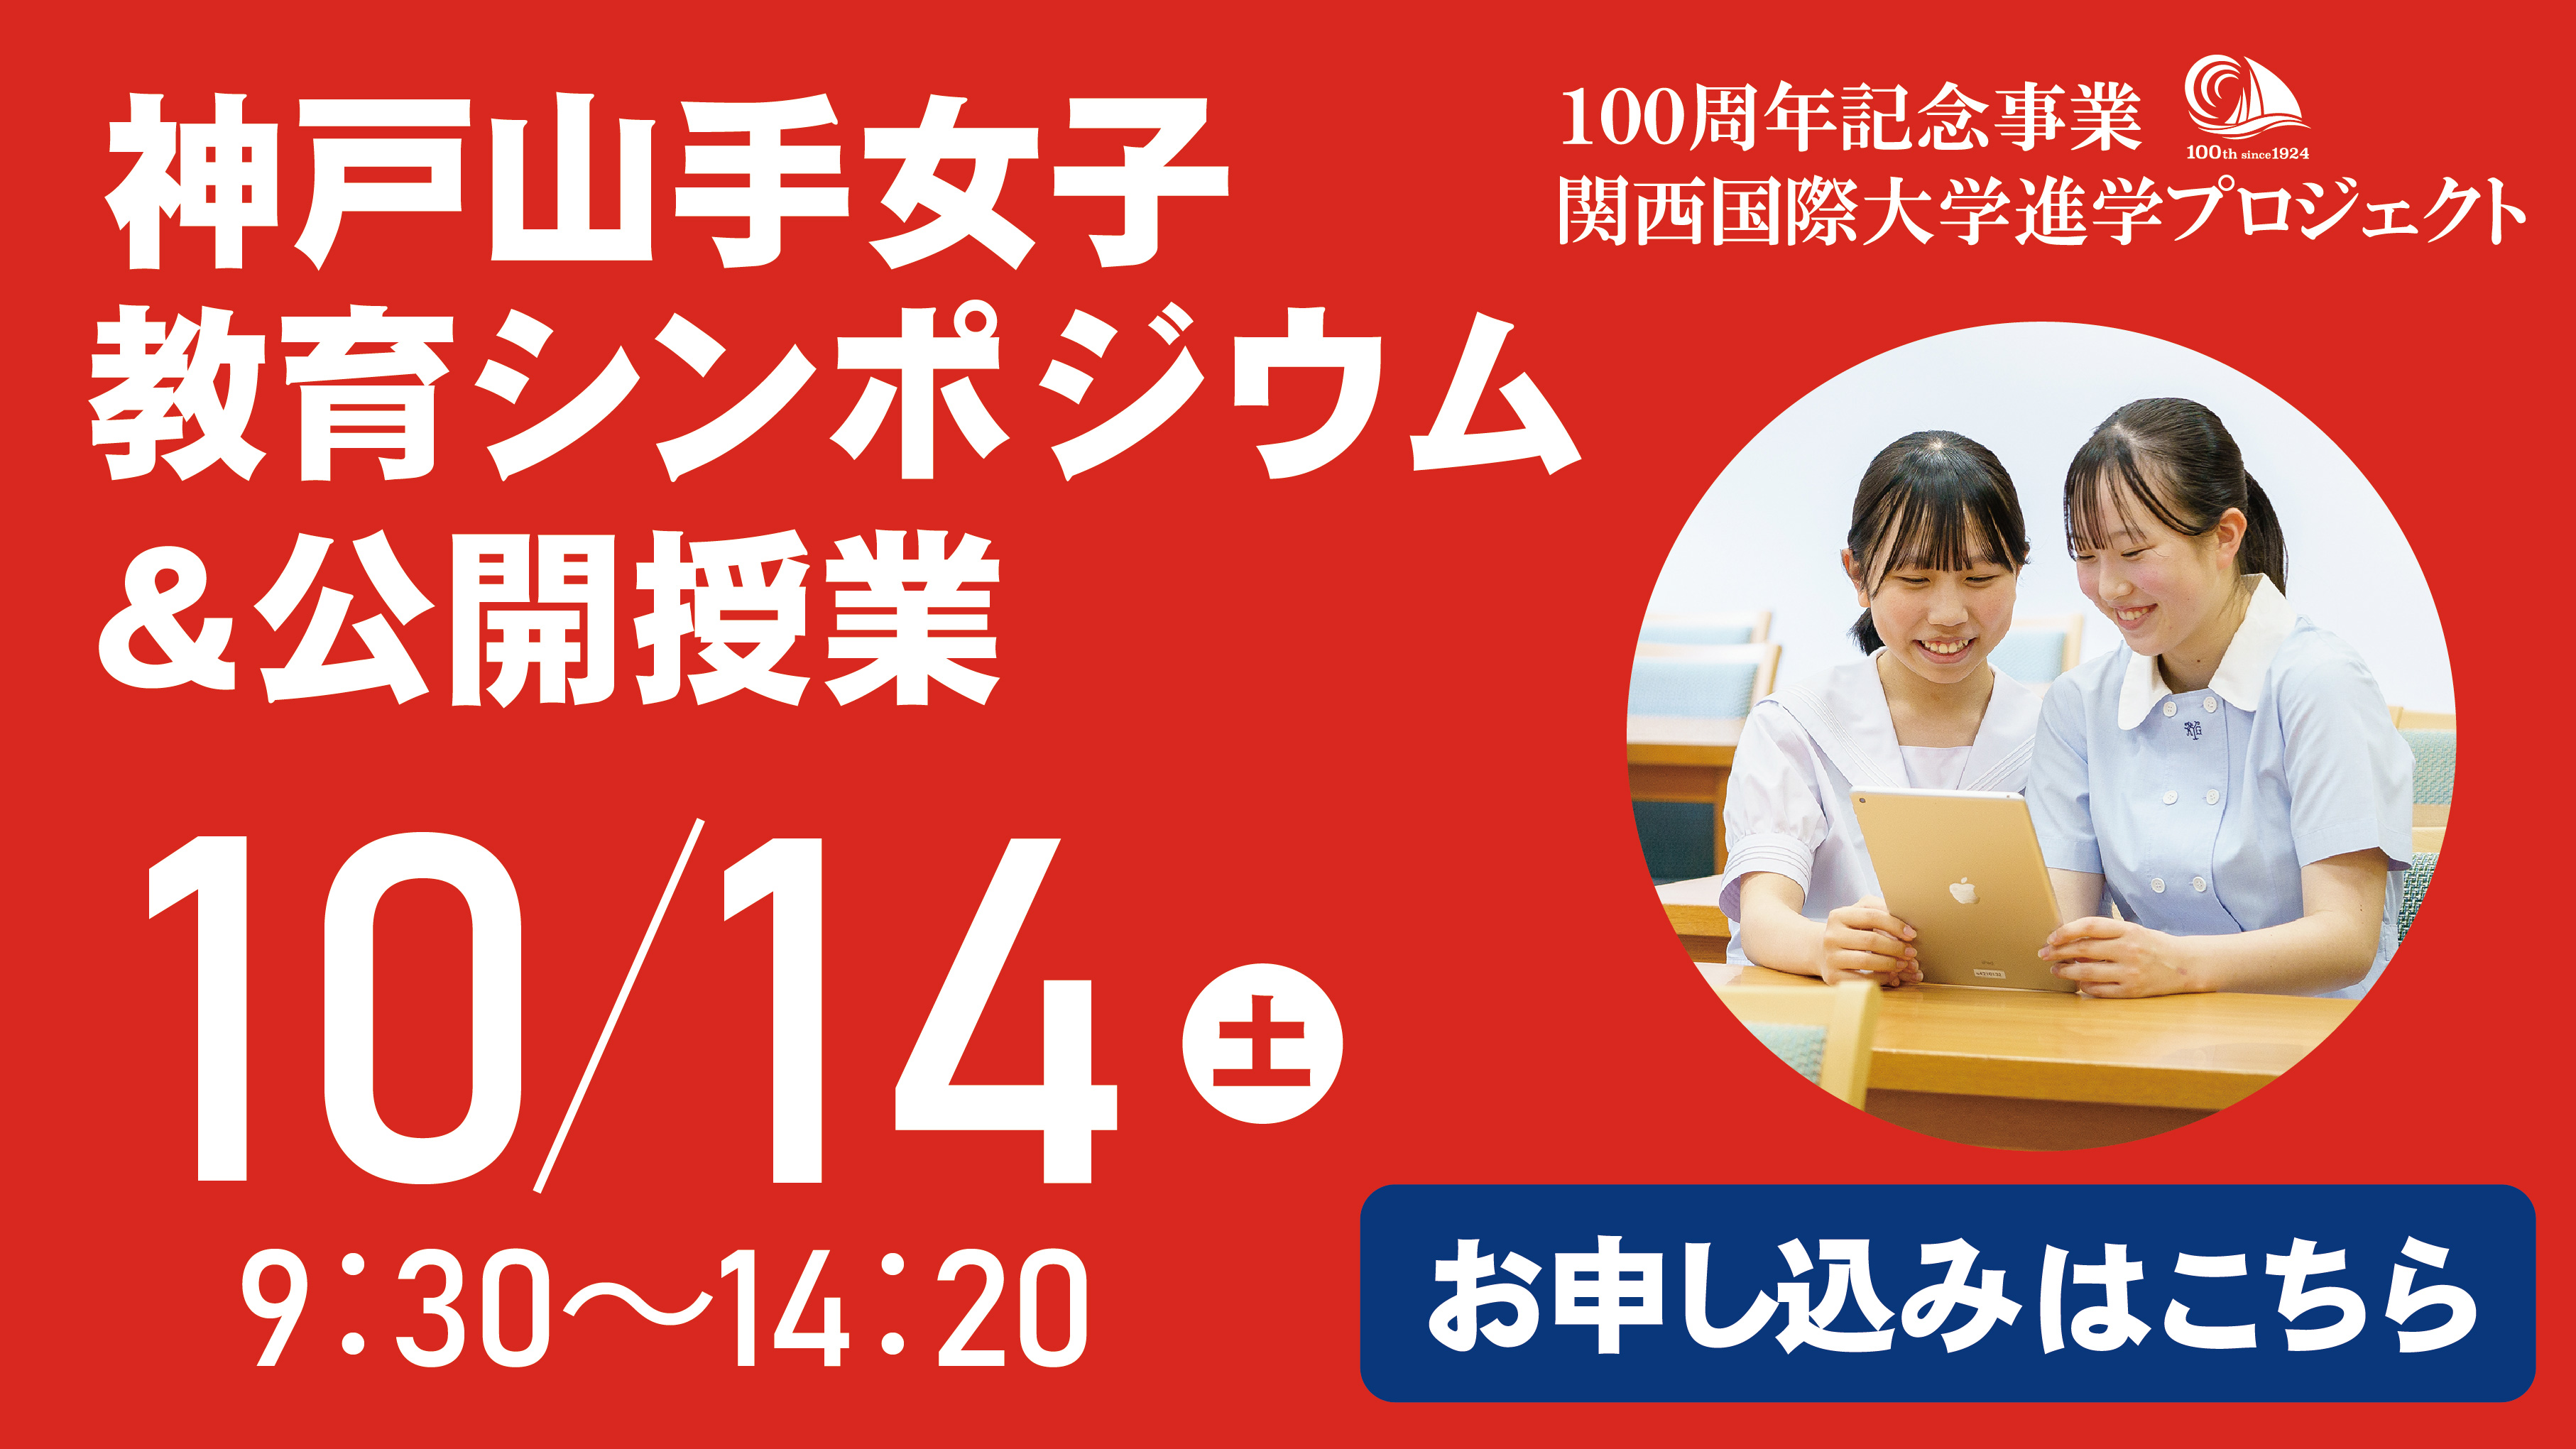 神戸山手教育シンポジウム&公開授業　10/14(土)9:30〜14:20